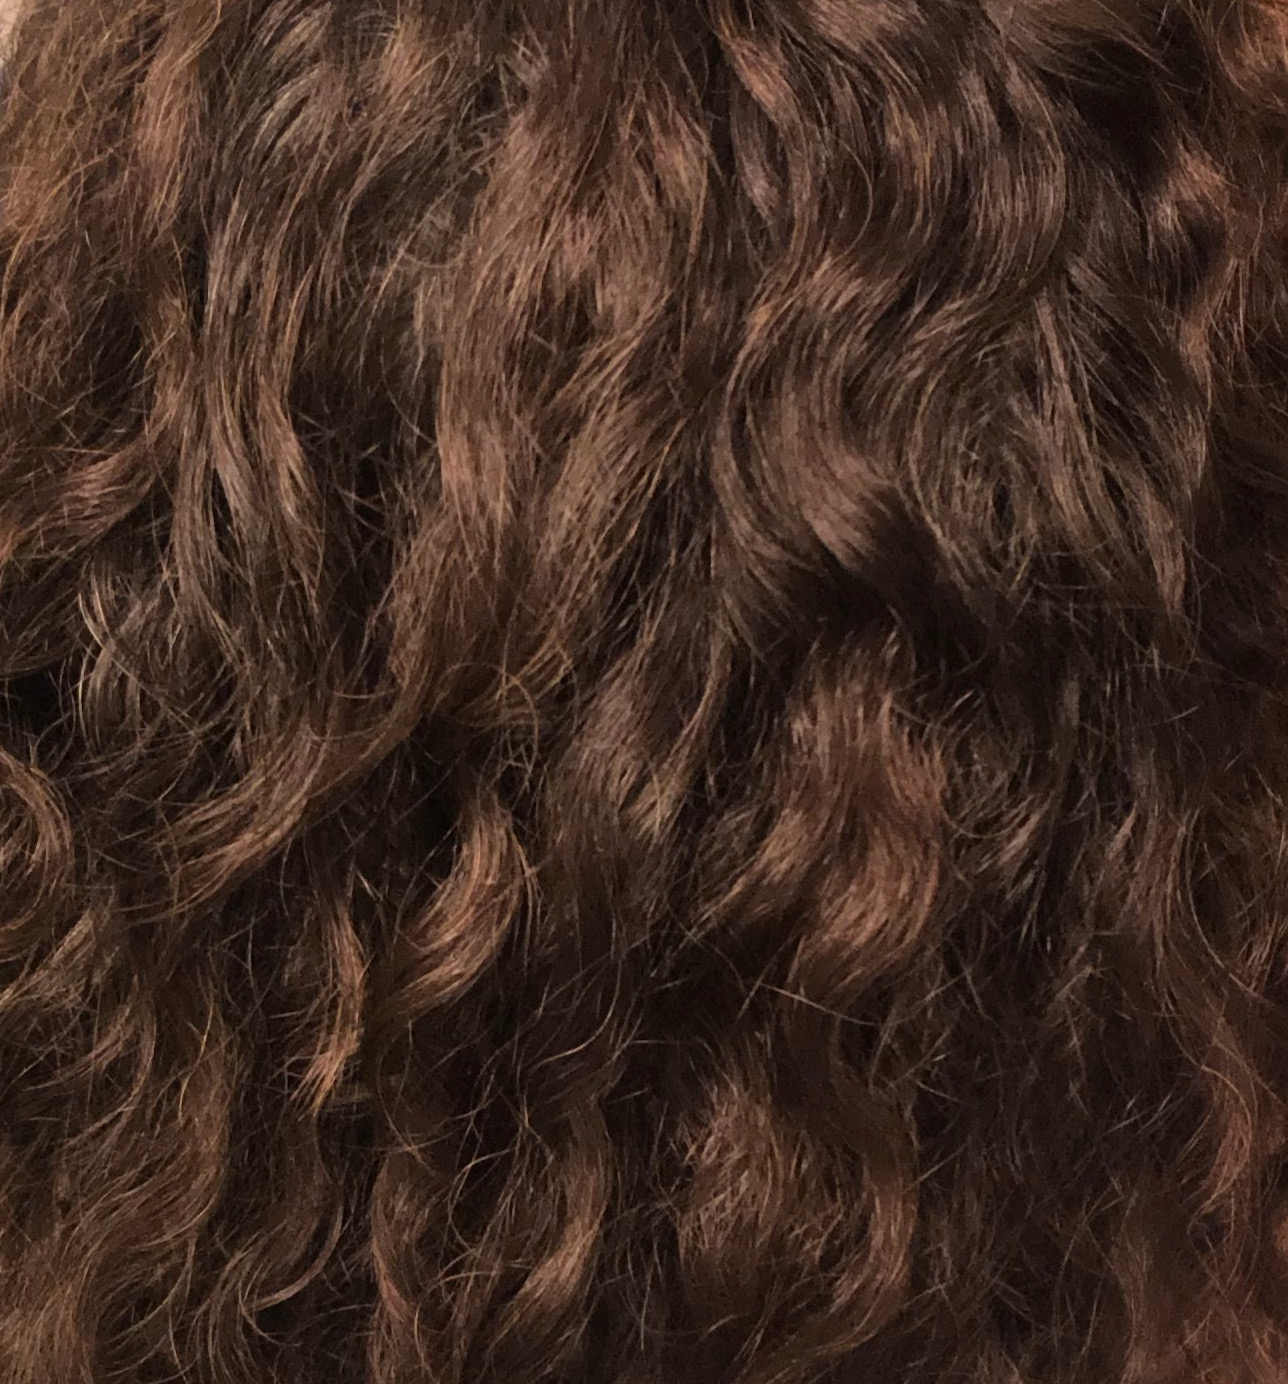 'olili hair curls